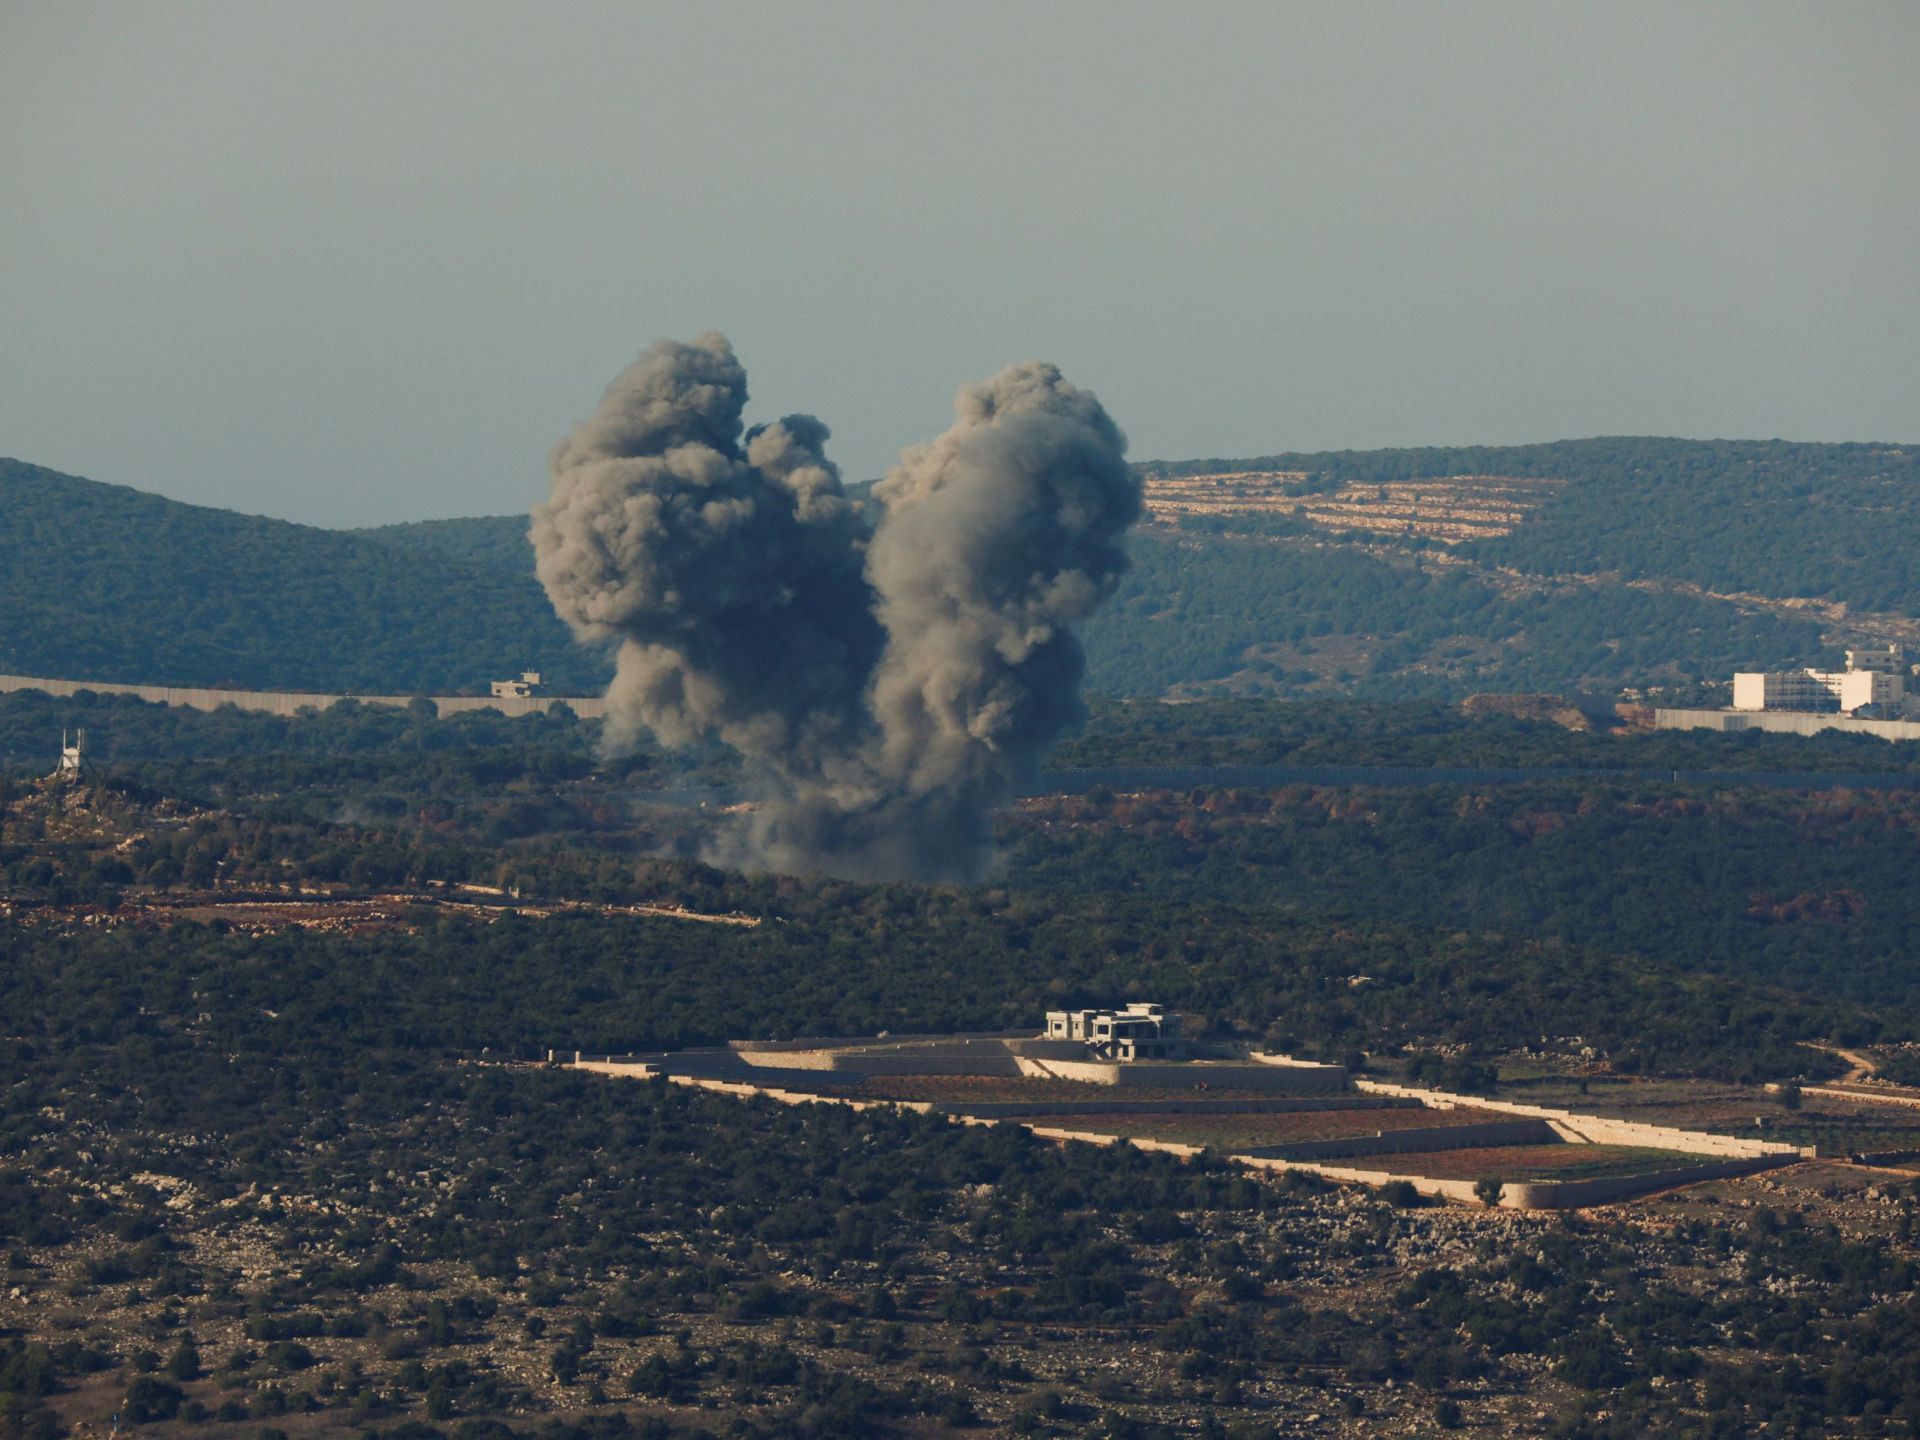 جيش الاحتلال يشن هجوما استباقيا على لبنان وحزب الله يقصف مواقع إسرائيلية | أخبار – البوكس نيوز